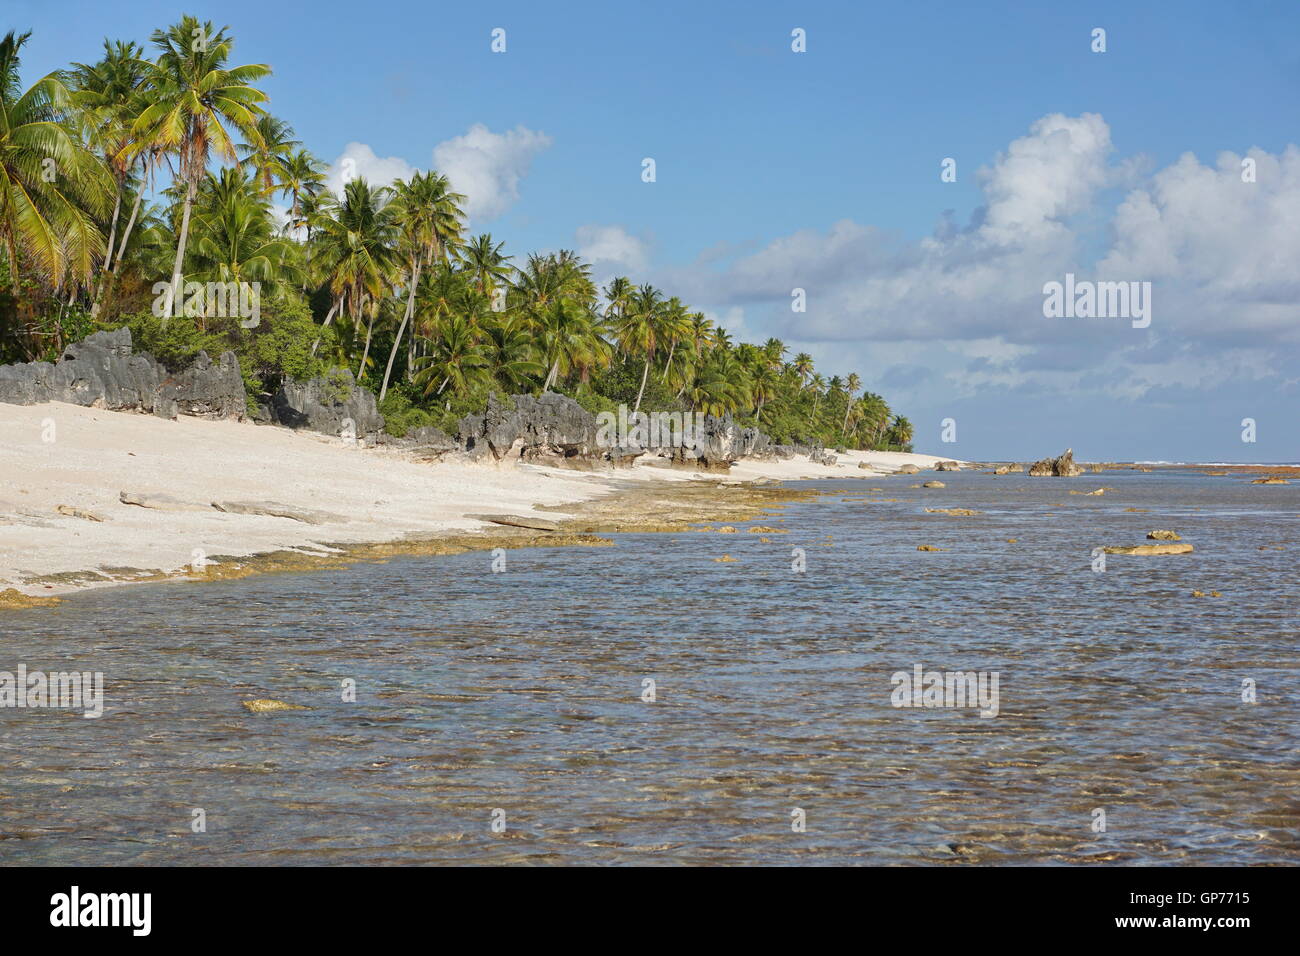 Tropische Küste mit Steinen auf den Strand und Kokosnuss Bäumen, Tikehau, Tuamotu-Archipel, Französisch-Polynesien, Pazifik Stockfoto